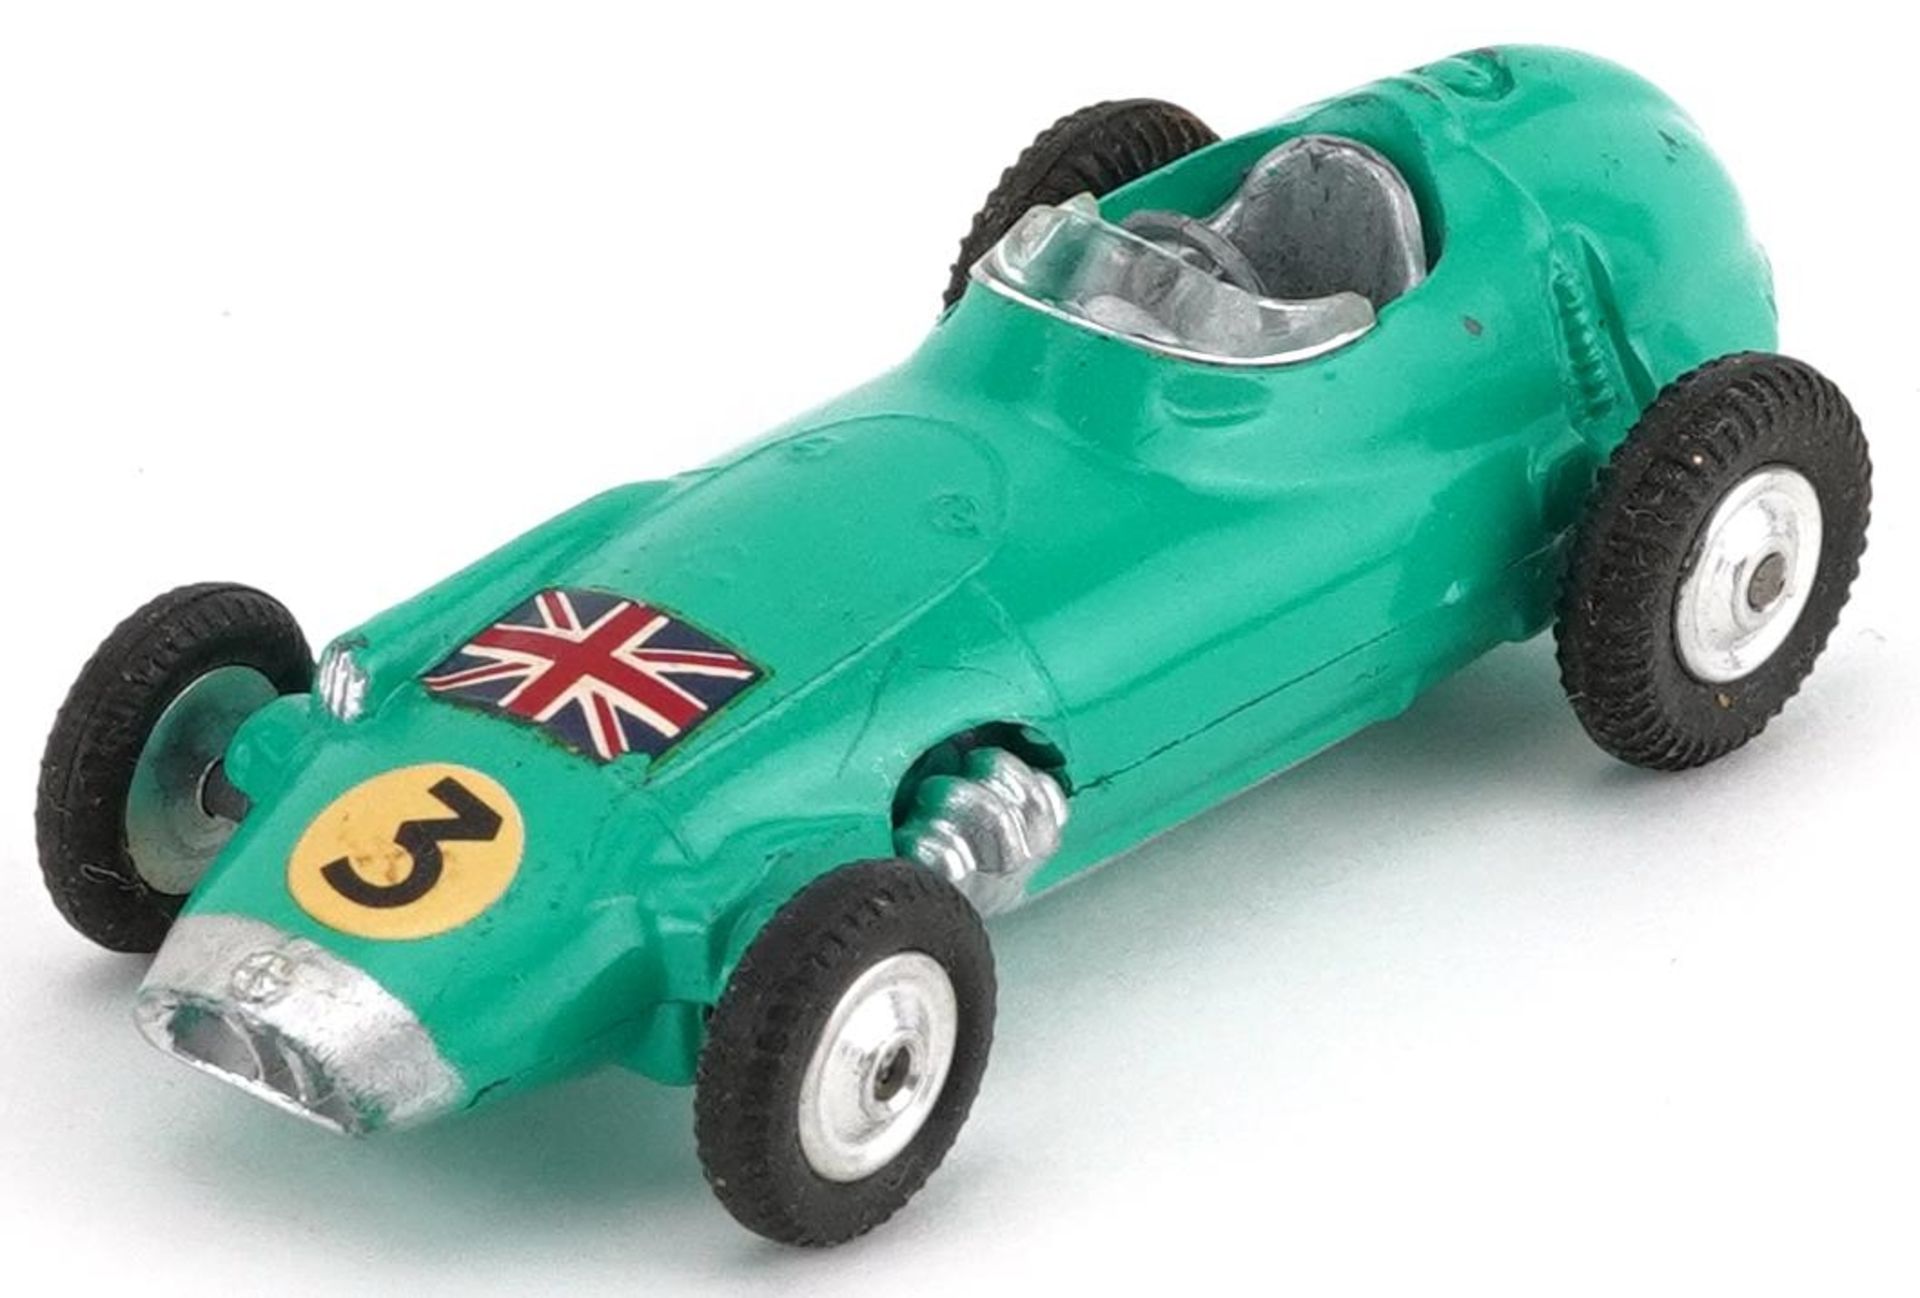 Corgi Toys BRM Formula I Grand Prix diecast racing car with box - Image 2 of 4